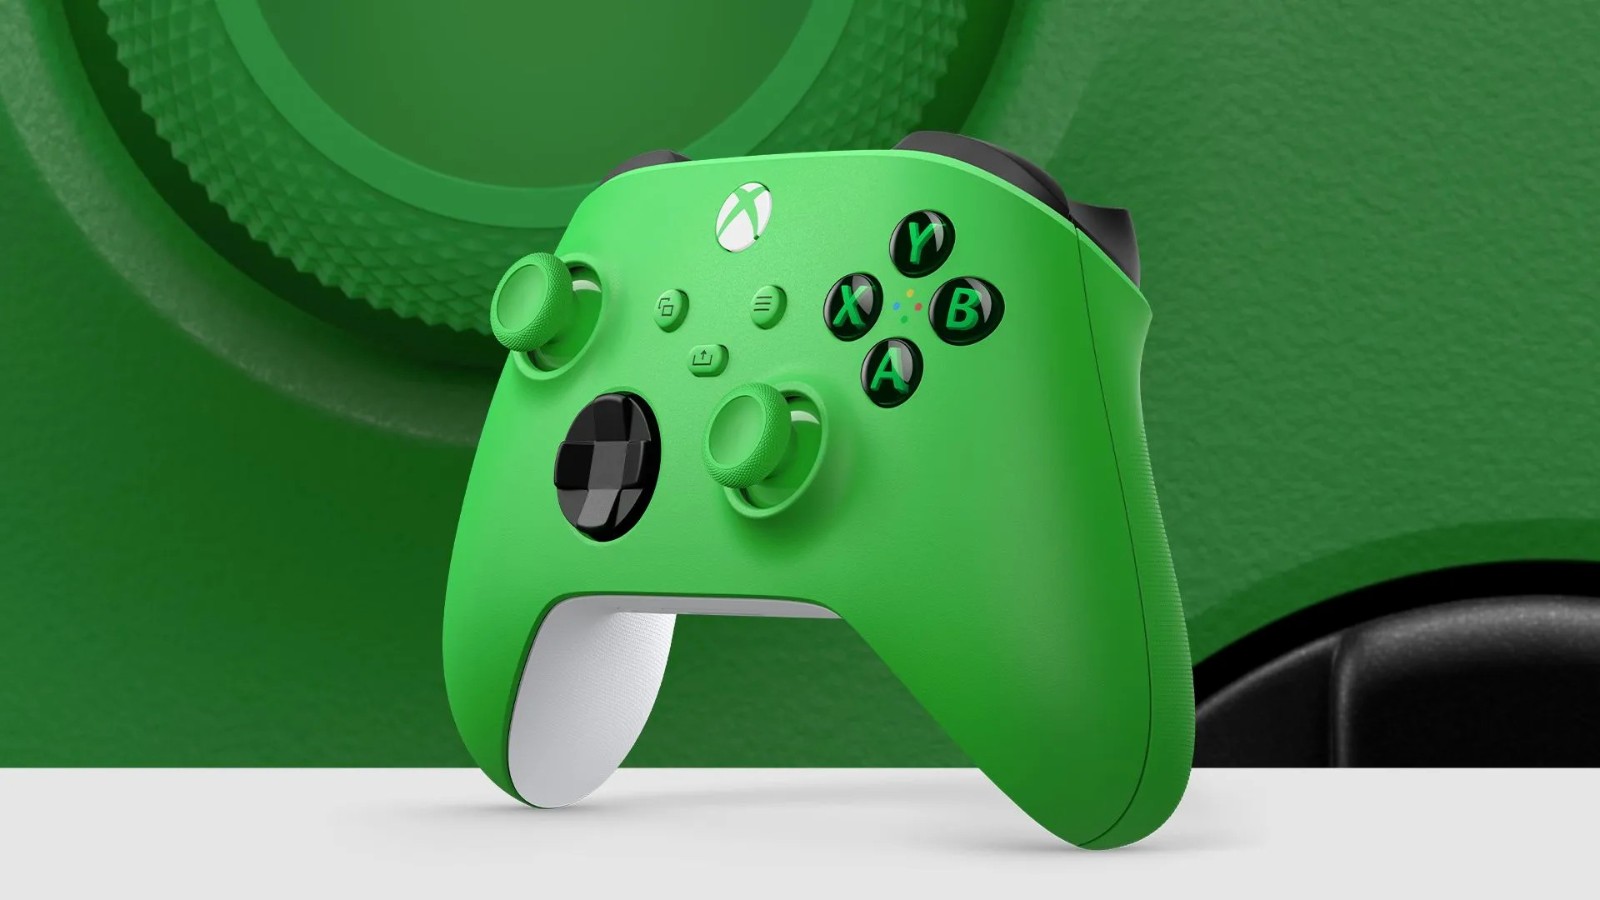 Xbox手柄新配色“青森绿” 国行版3月21日推出 二次世界 第2张